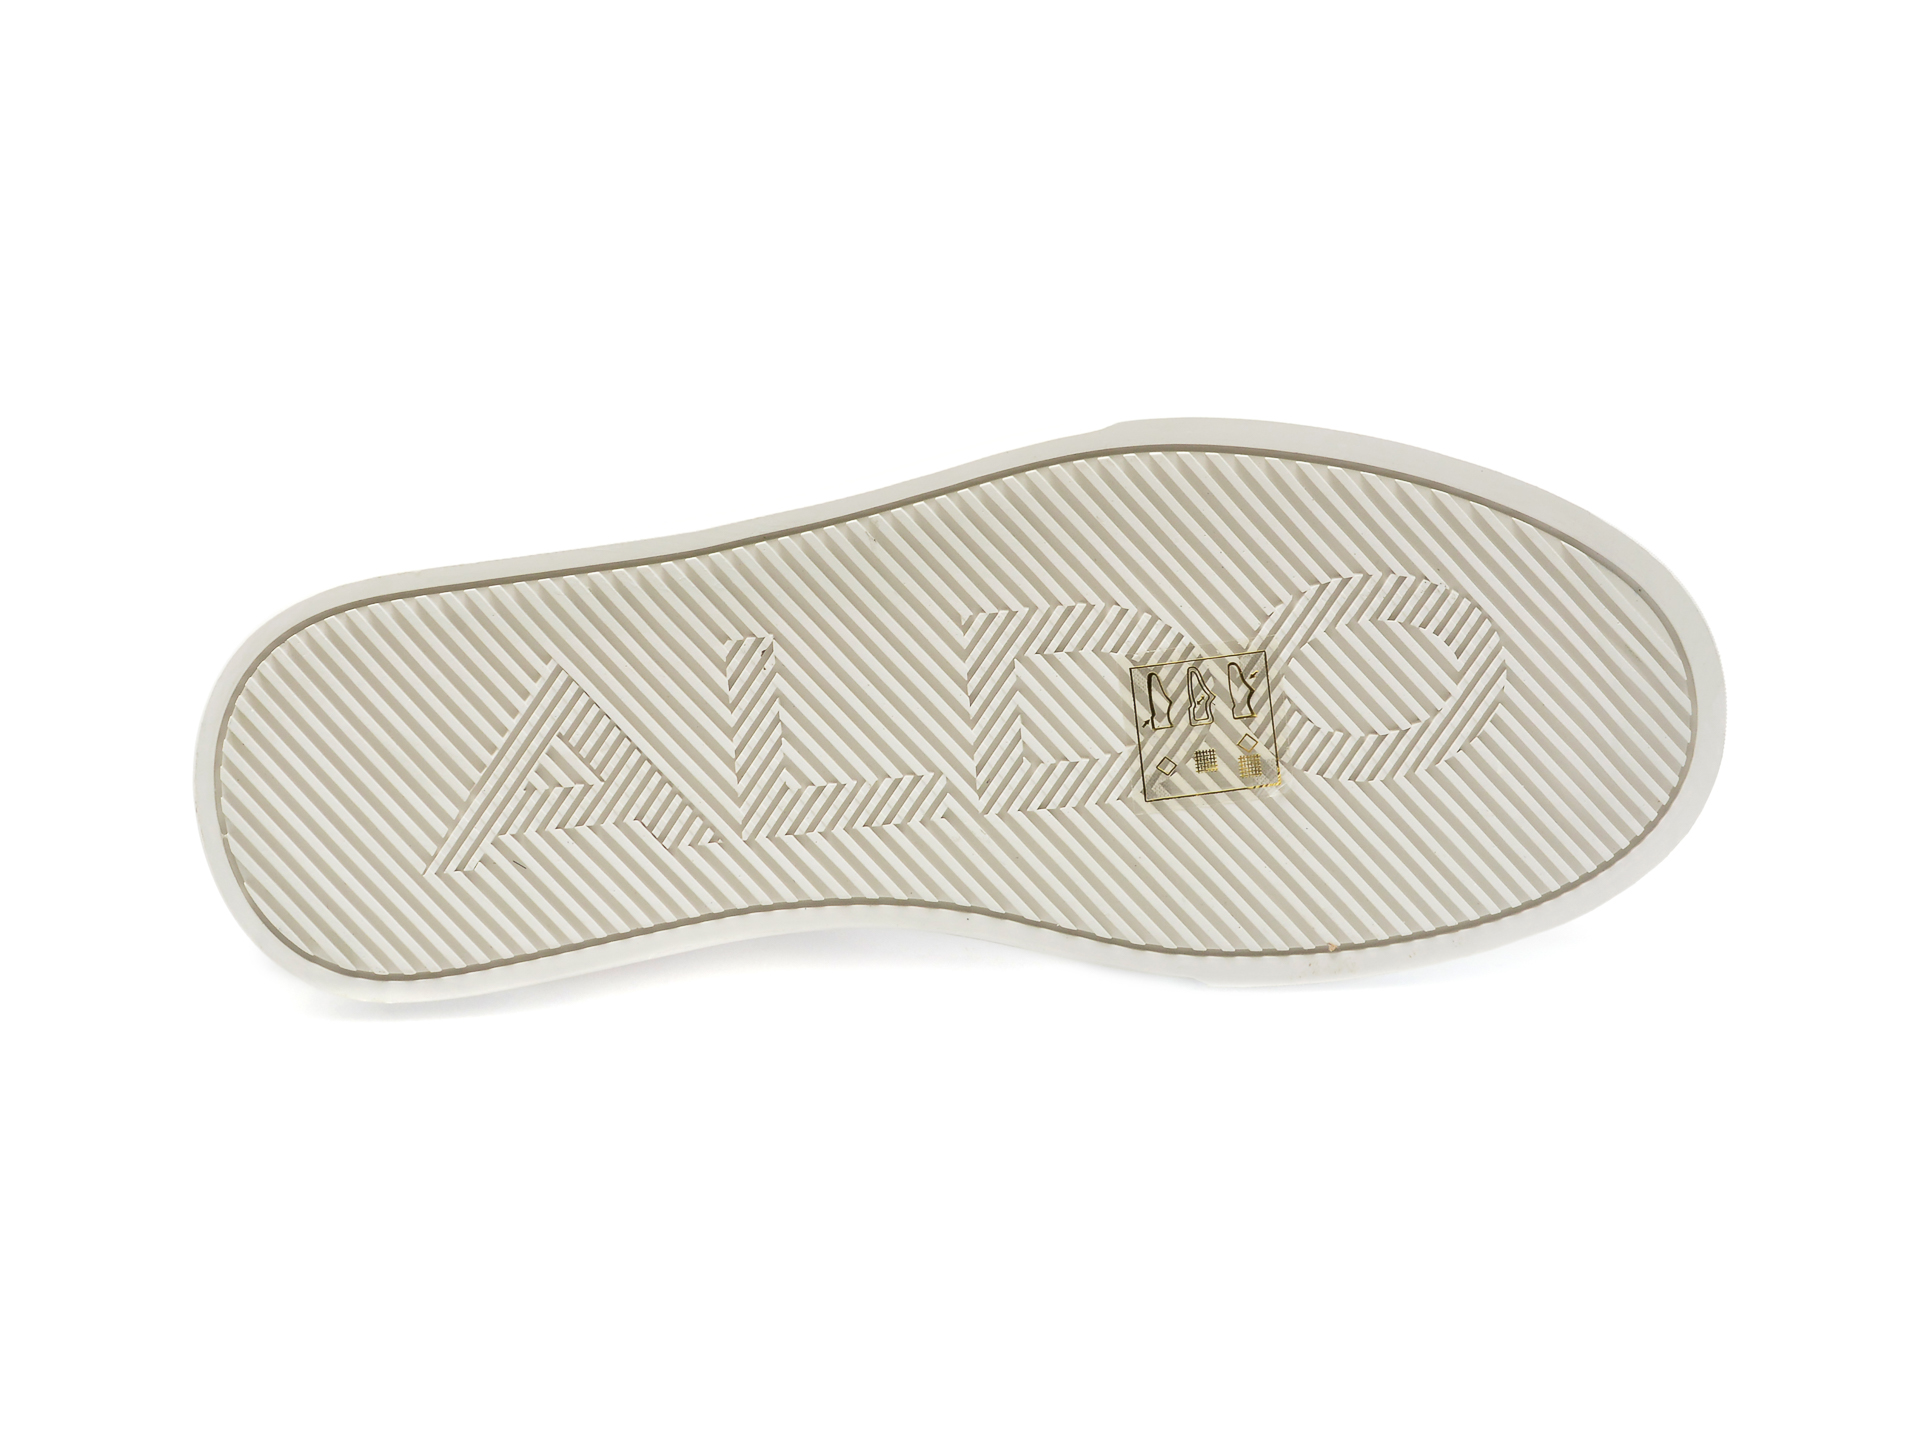 Pantofi ALDO nude, MCENROE270, din material textil si piele ecologica